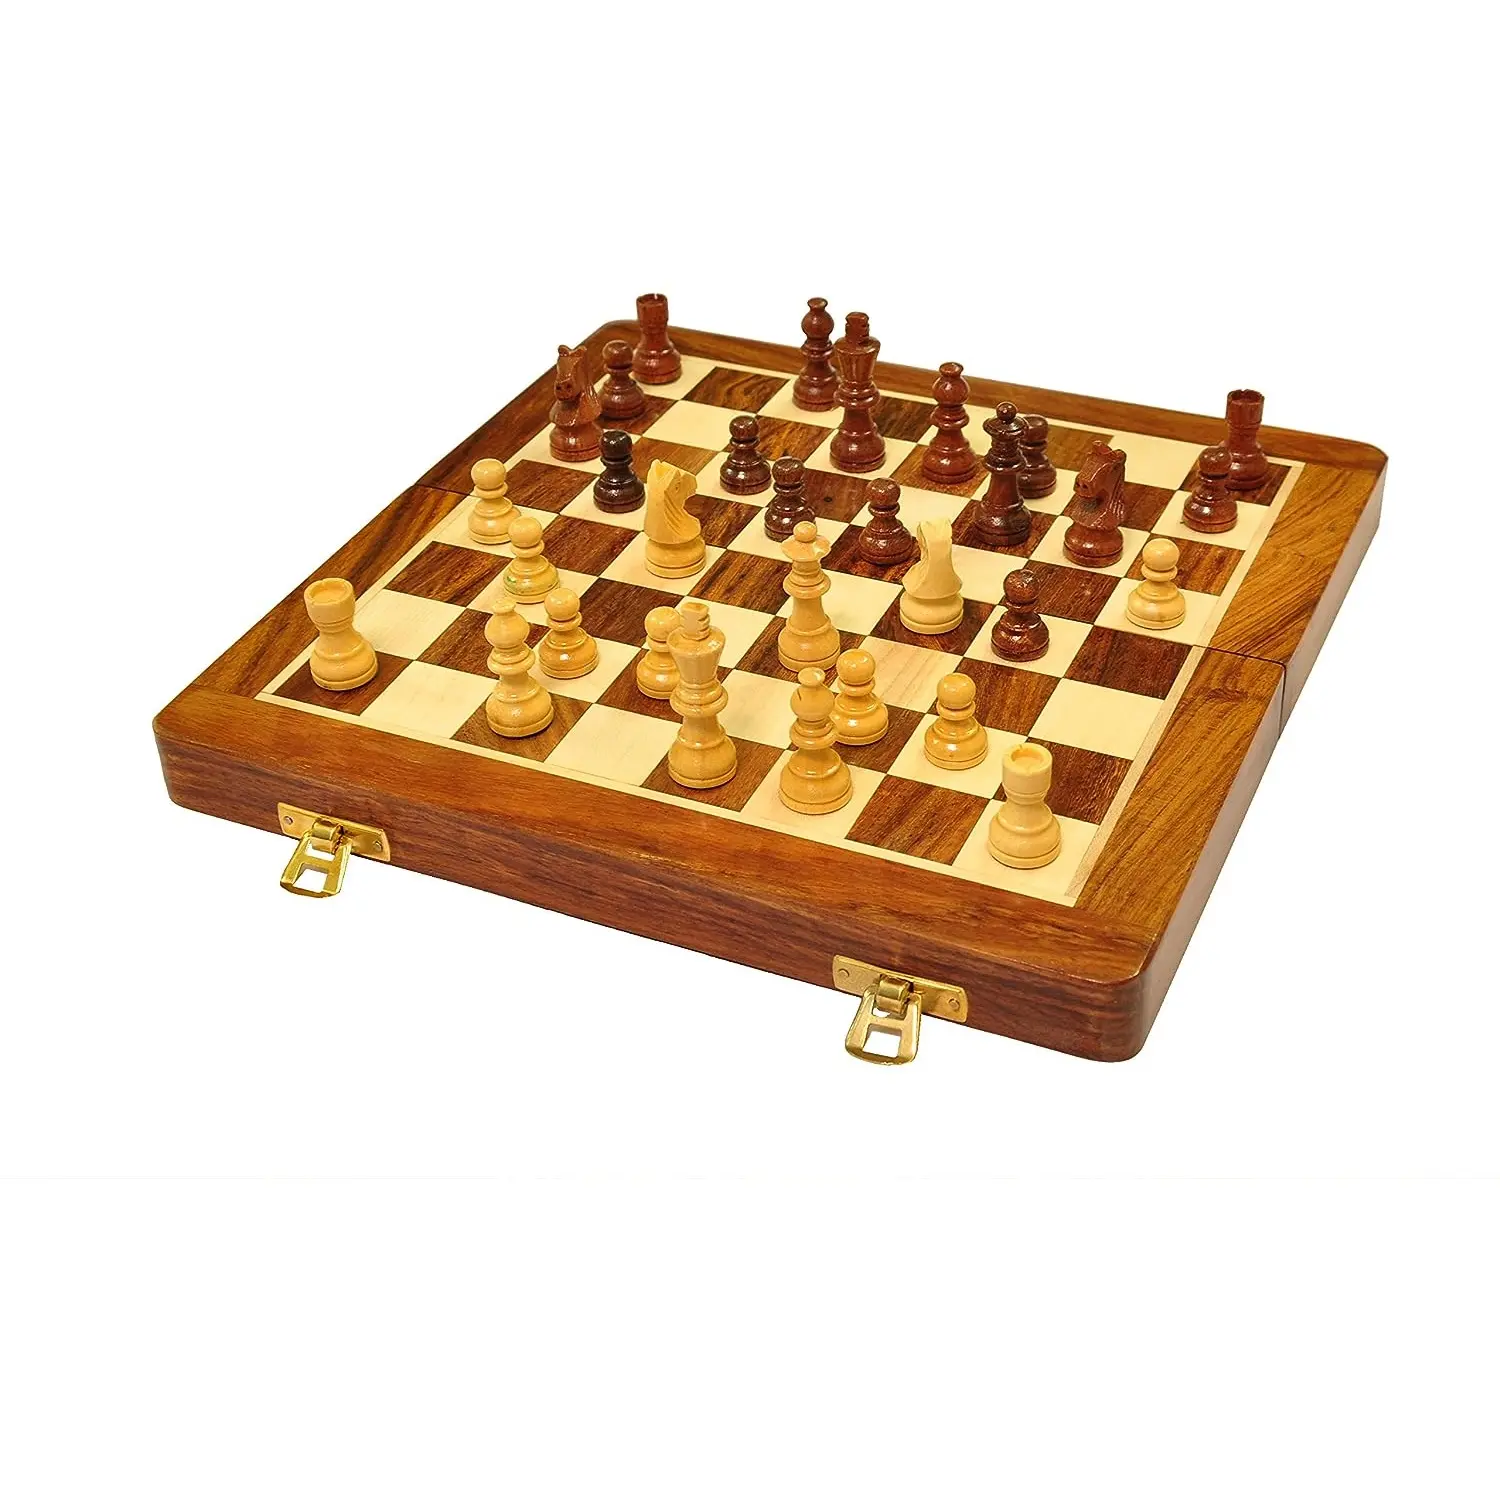 Beli Set catur kayu kualitas Premium dengan Set catur buatan dan dipoles kayu alami untuk dijual oleh eksportir